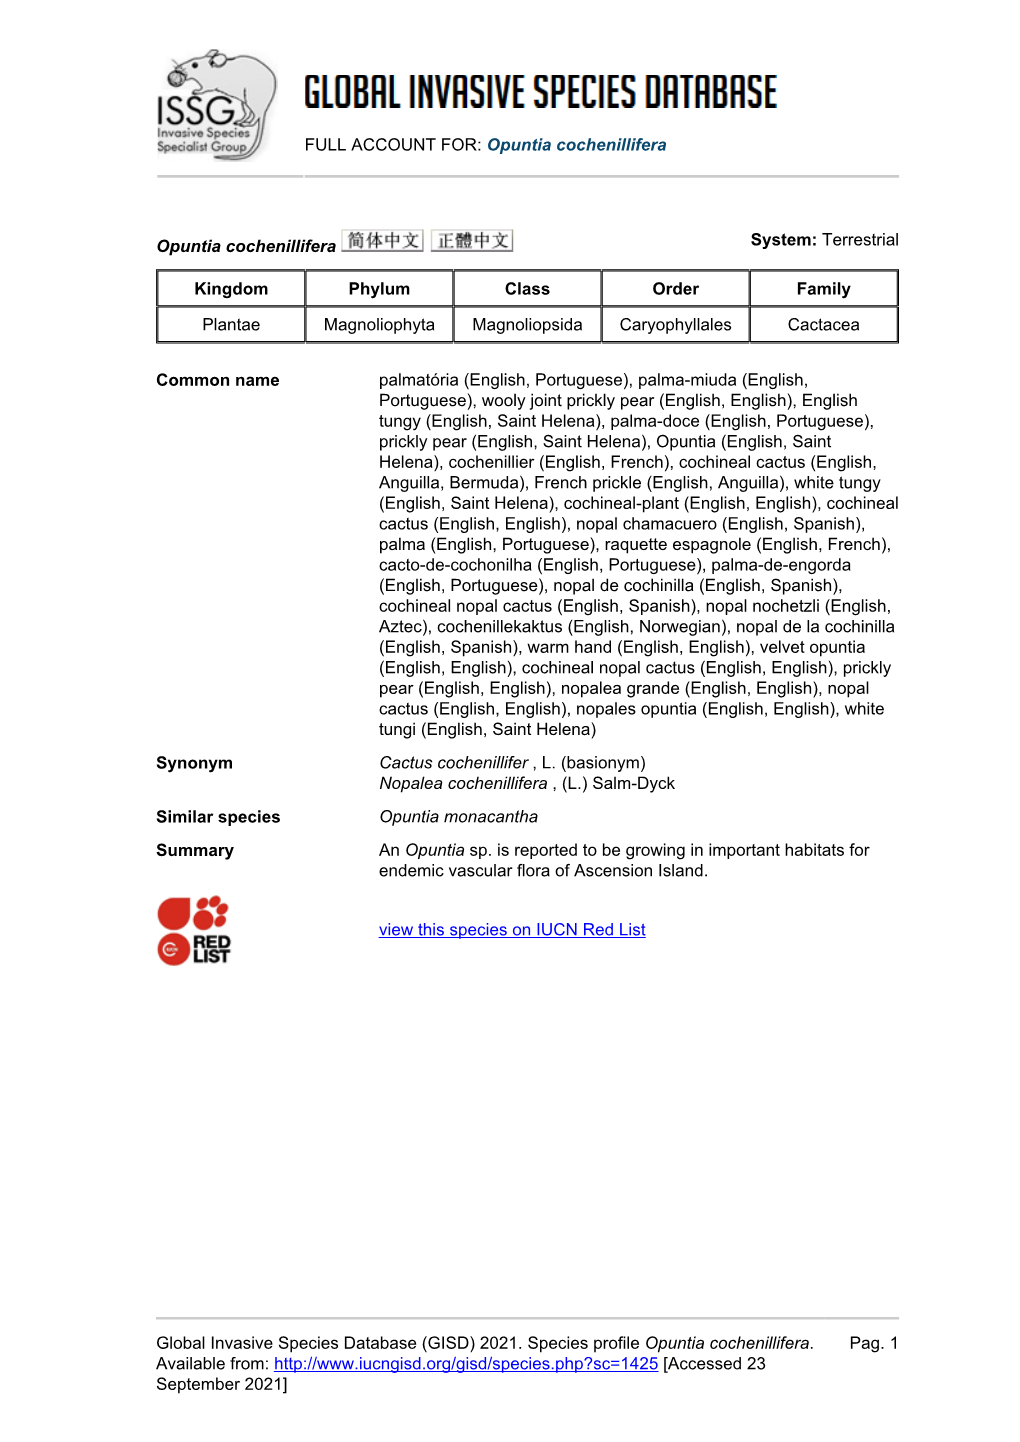 (GISD) 2021. Species Profile Opuntia Cochenillifera. A